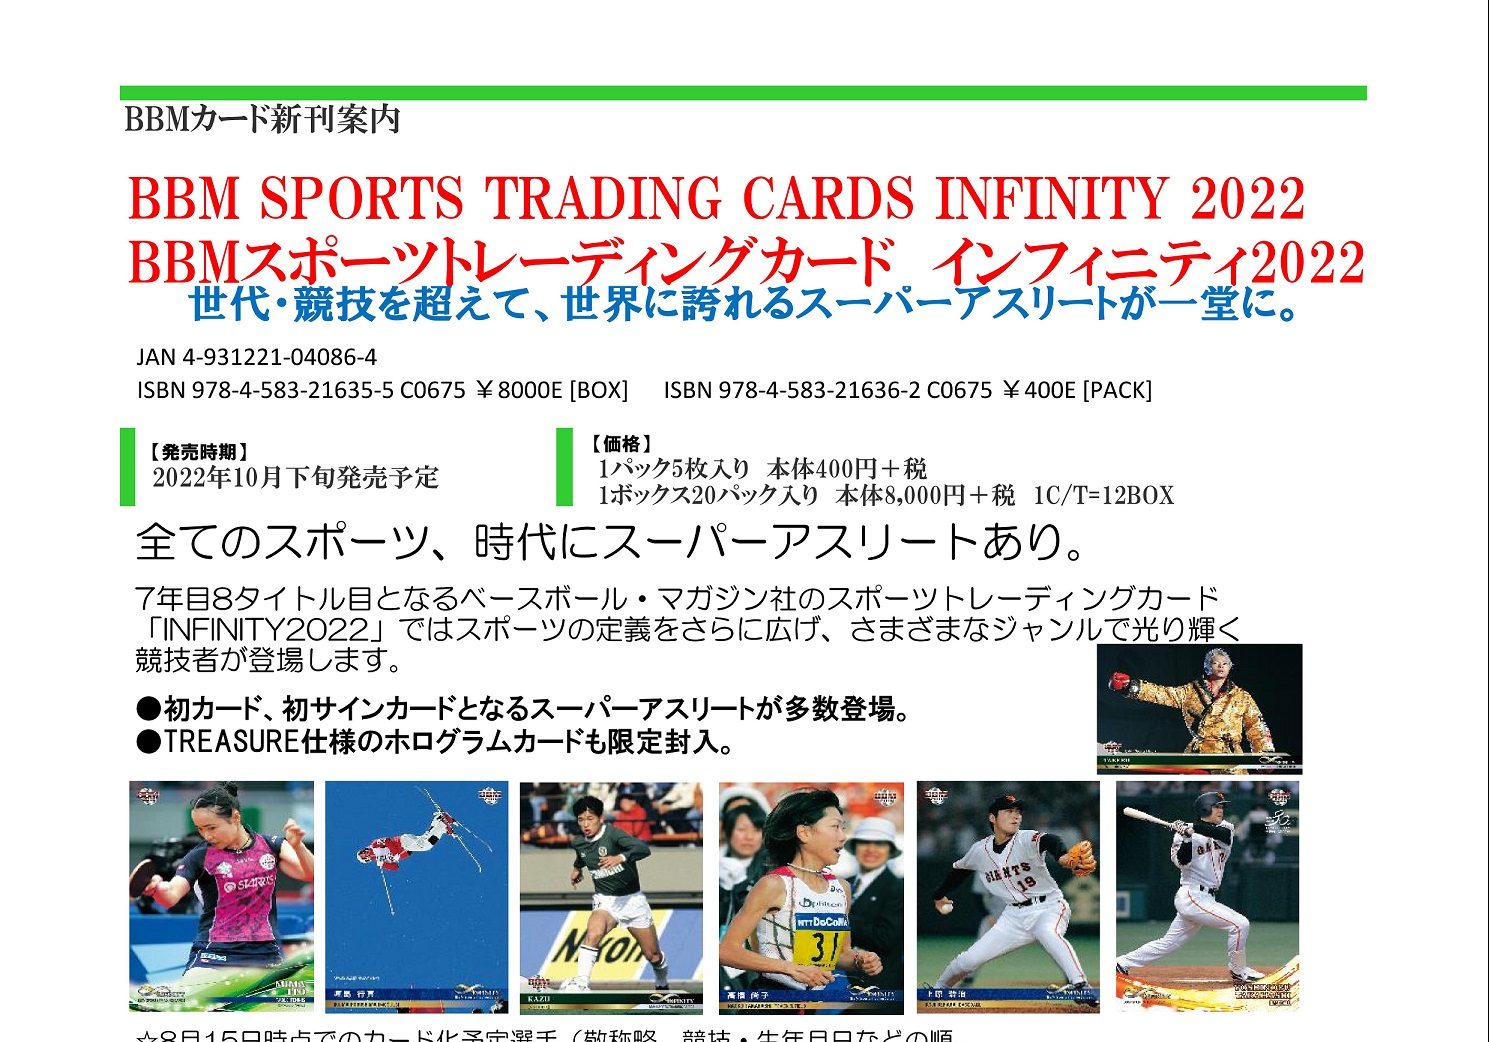 BBM カード INFINITY インフィニティ 2022 2ボックス スポーツ選手 お